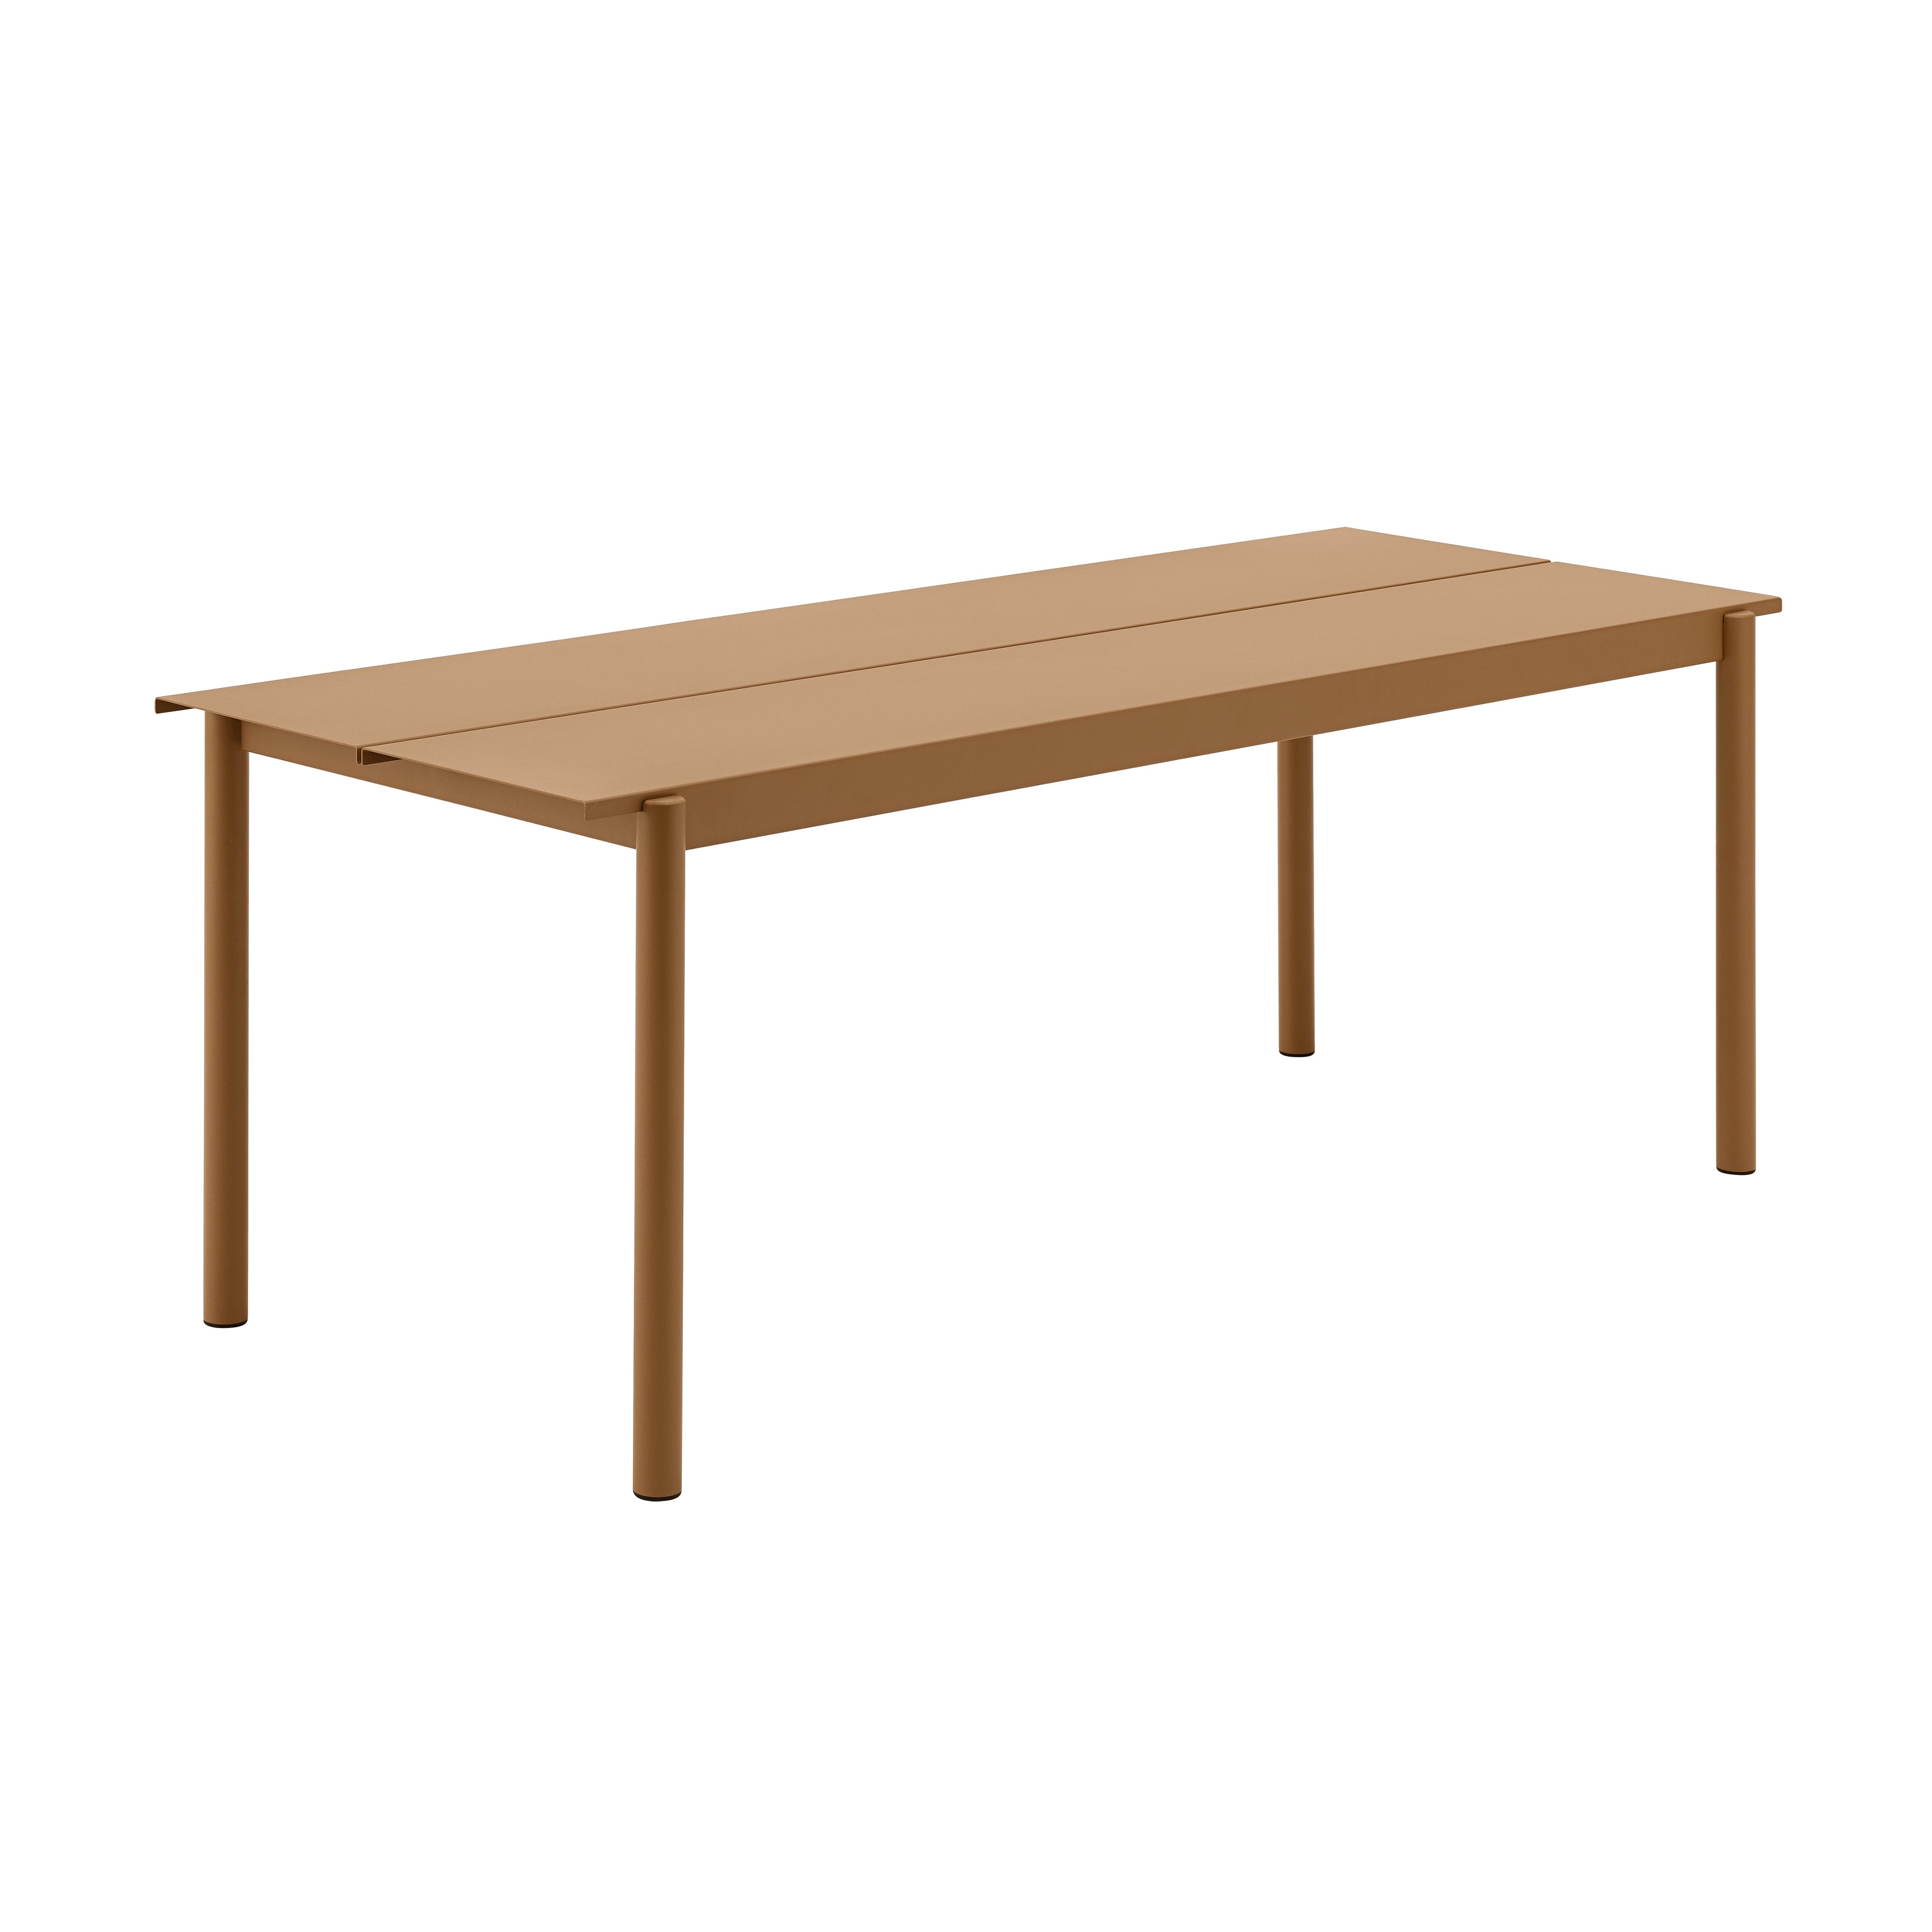 Linear Steel Table: Medium - 78.7